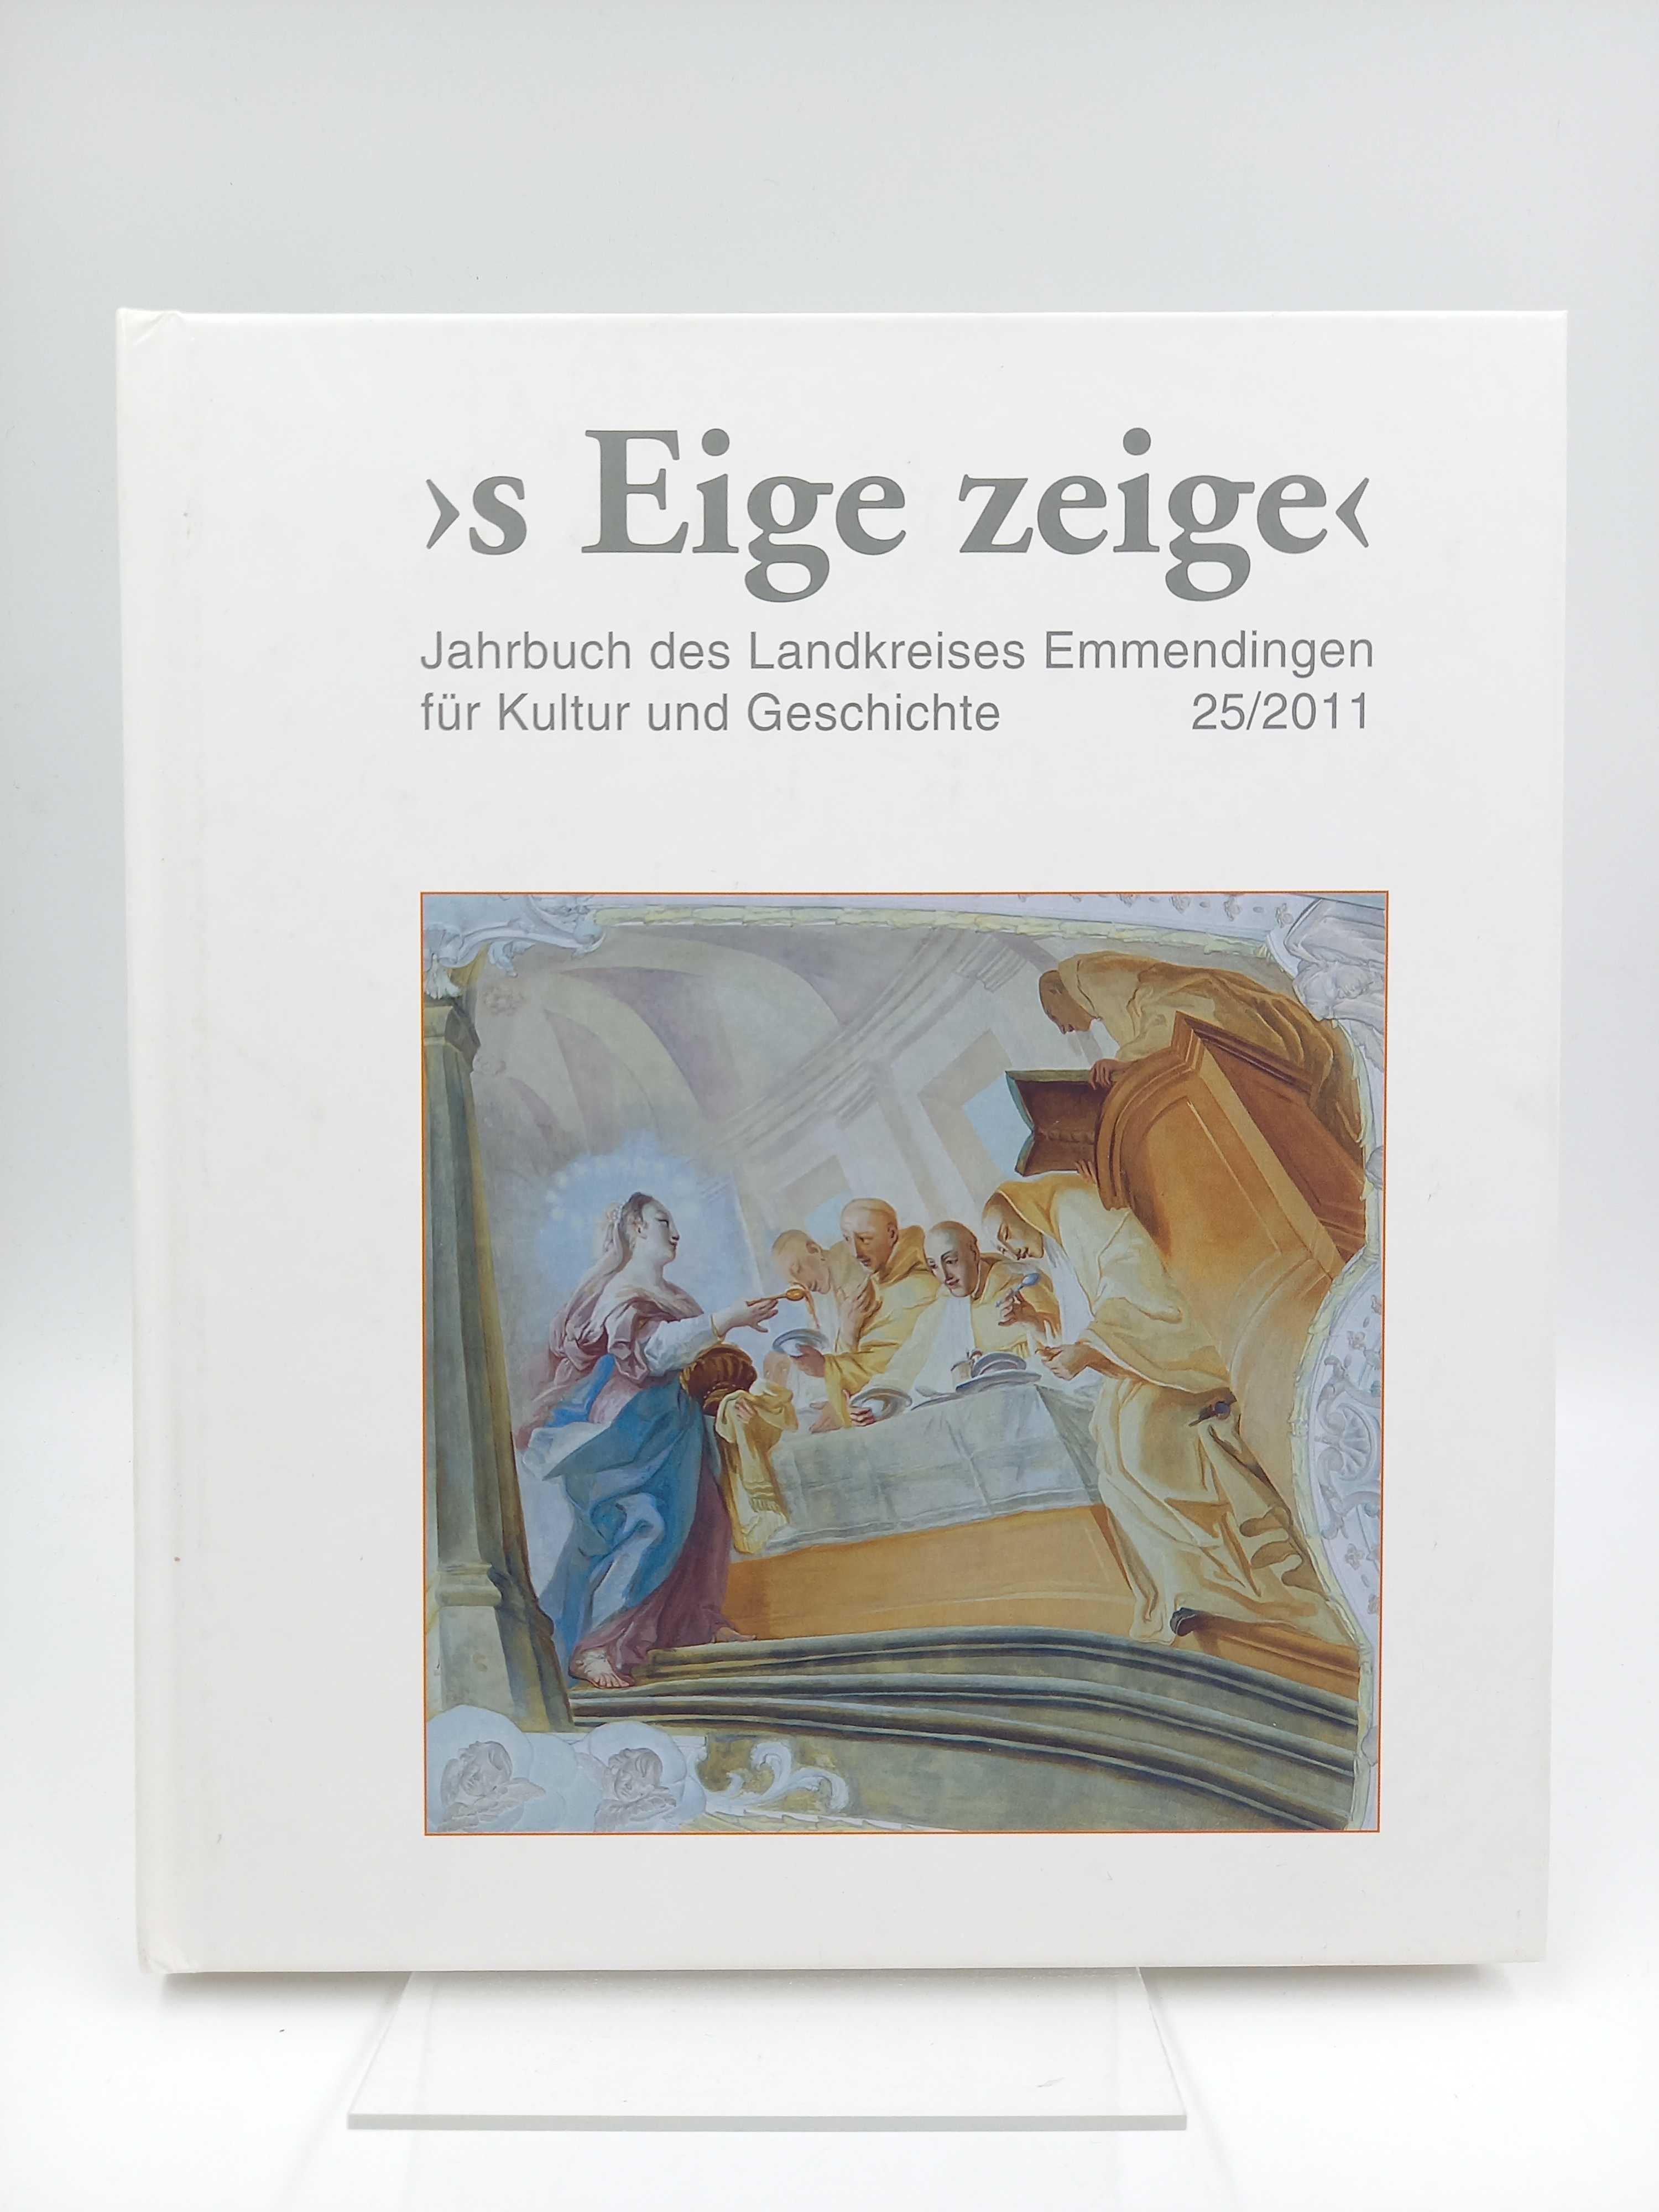 s Eige zeige - Jahrbuch des Landkreises Emmendingen für Kultur und Geschichte, Band 25/2011 - Hurth, Hanno (Hg.) / Auer, Gerhard A. (Red.) -